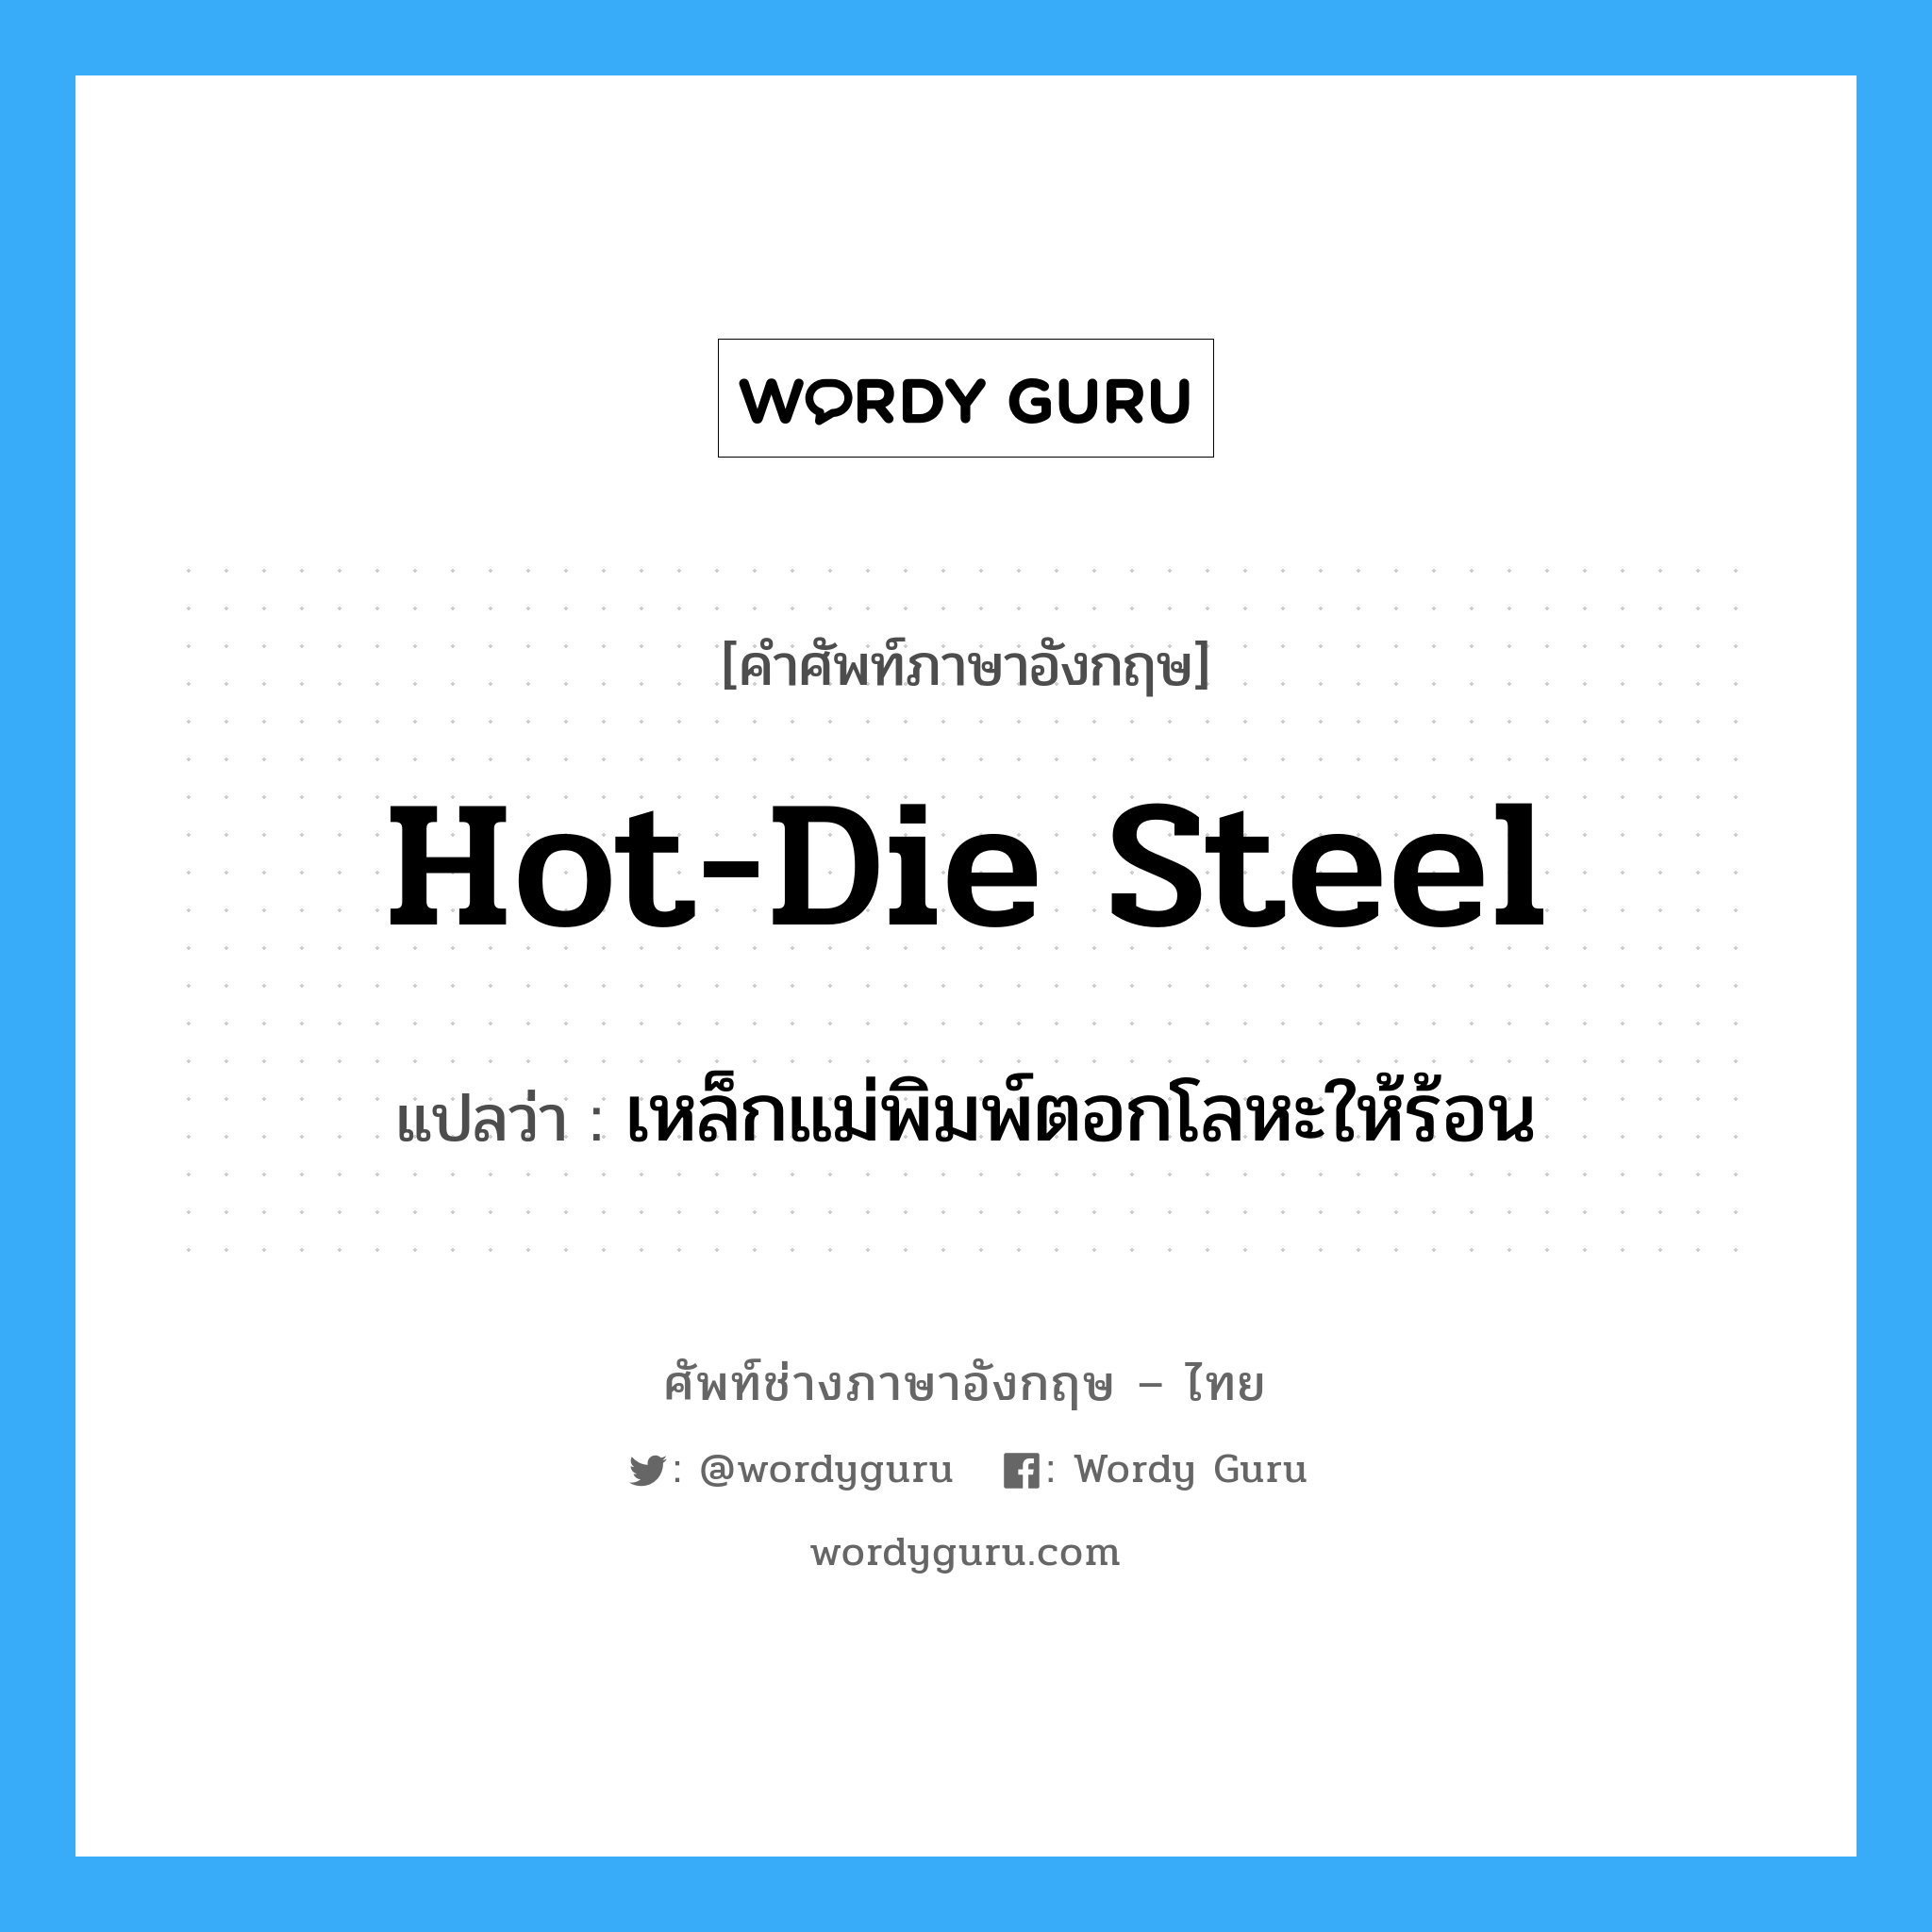 hot-die steel แปลว่า?, คำศัพท์ช่างภาษาอังกฤษ - ไทย hot-die steel คำศัพท์ภาษาอังกฤษ hot-die steel แปลว่า เหล็กแม่พิมพ์ตอกโลหะให้ร้อน